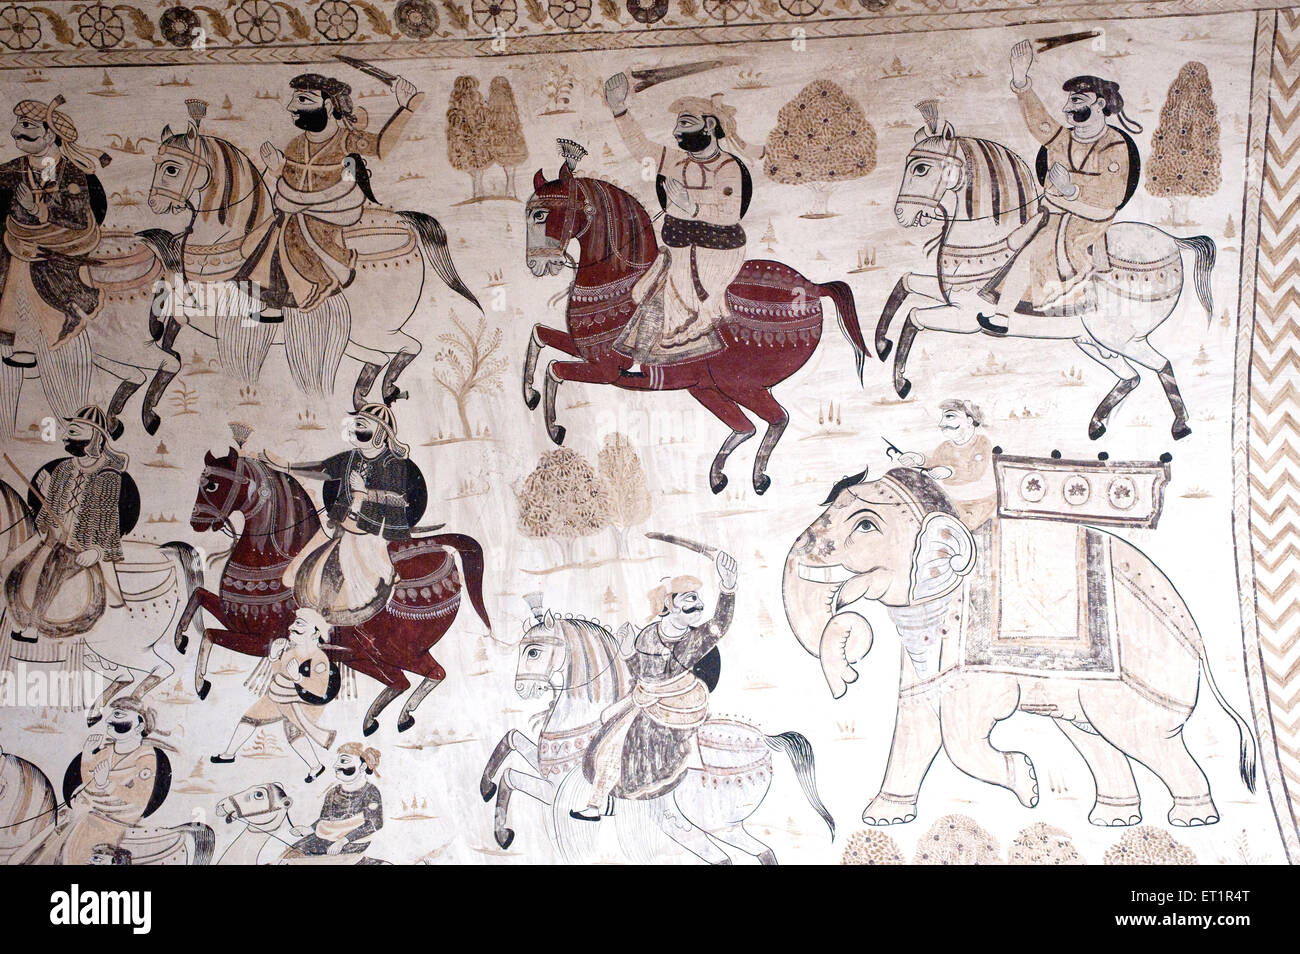 Wall painting mural soldiers on horses at Lakshminarayan temple ; Orchha ; Tikamgarh ; Madhya Pradesh ; India Stock Photo